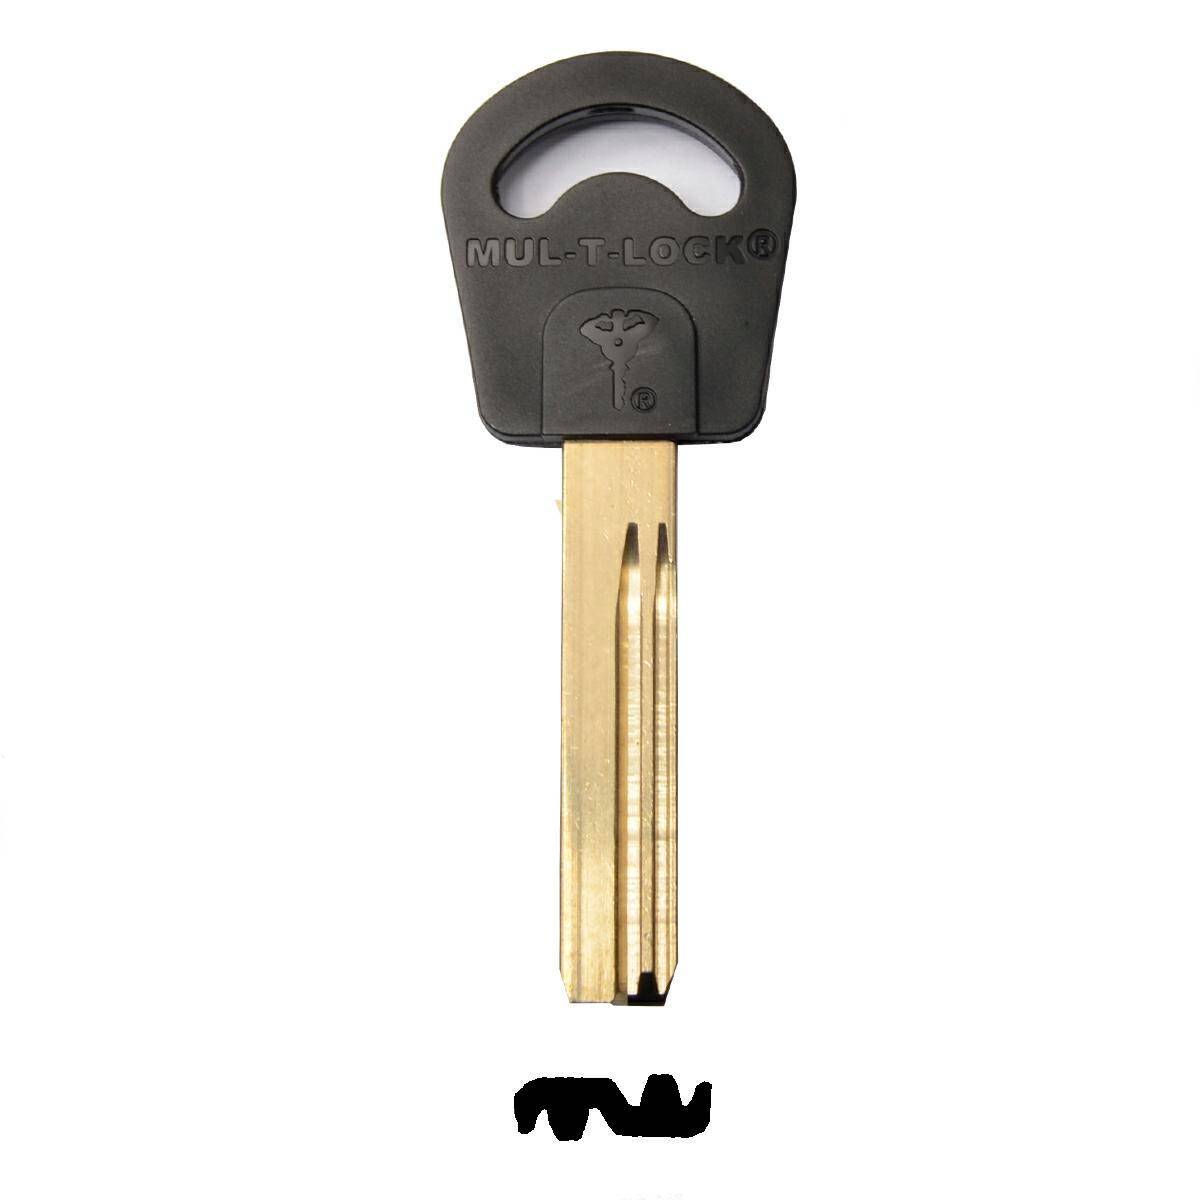 Key MUL-T-LOCK 015